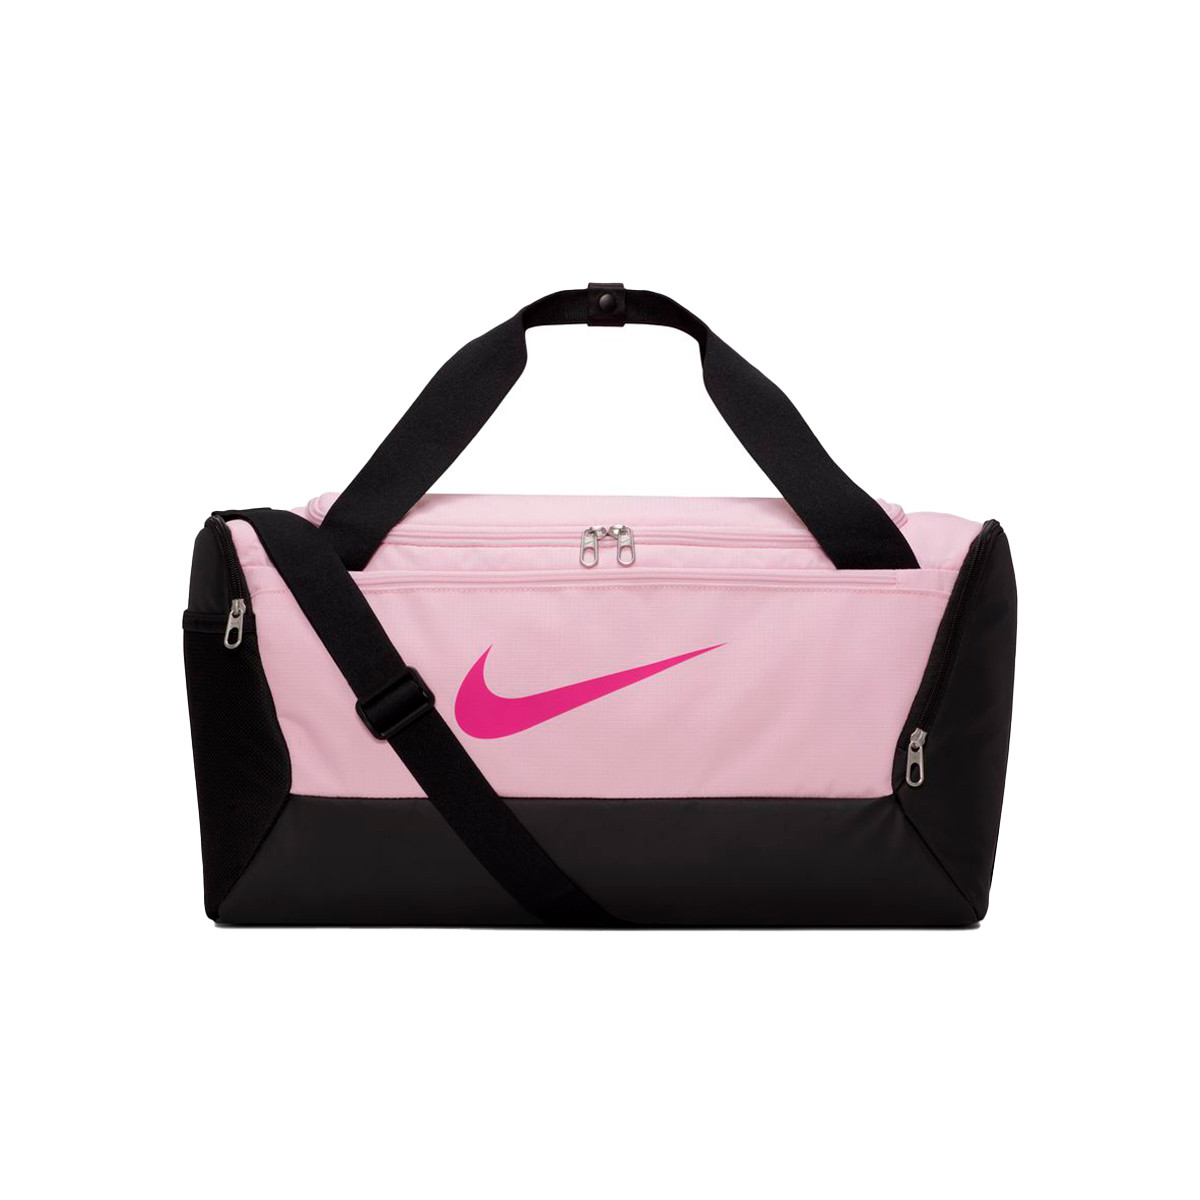 Brasilia 9.5 Petit sac de sport pour entraînement Nike pour homme en  coloris Rose